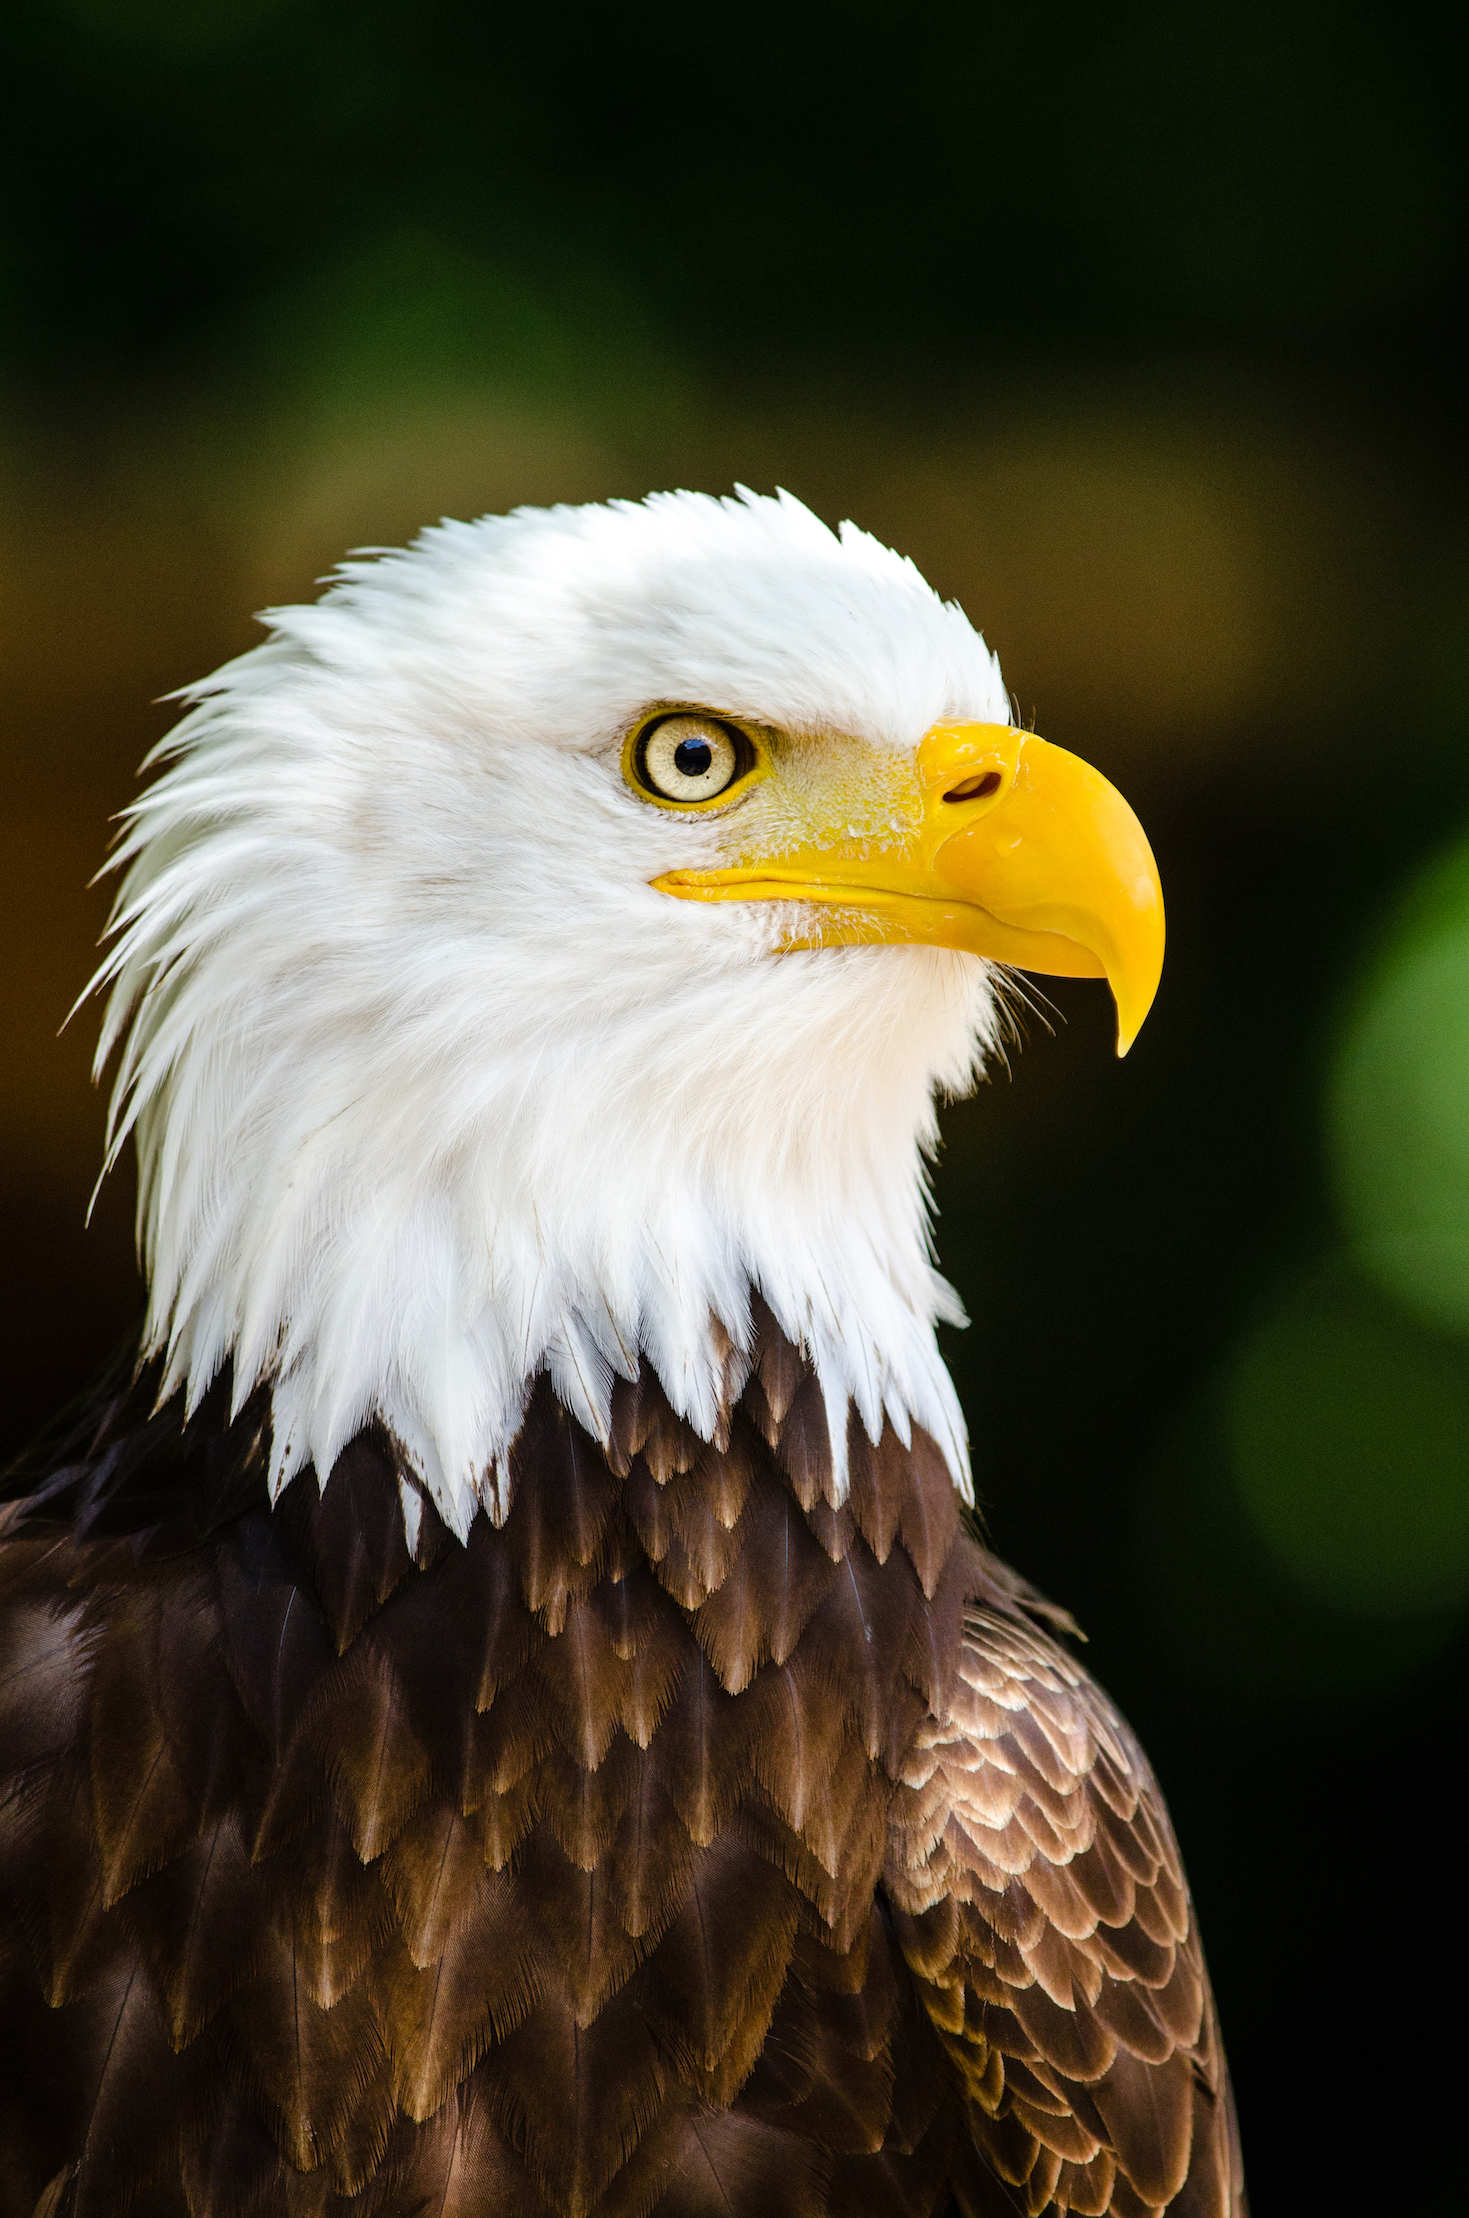 Bald eagle | The Raptor Center